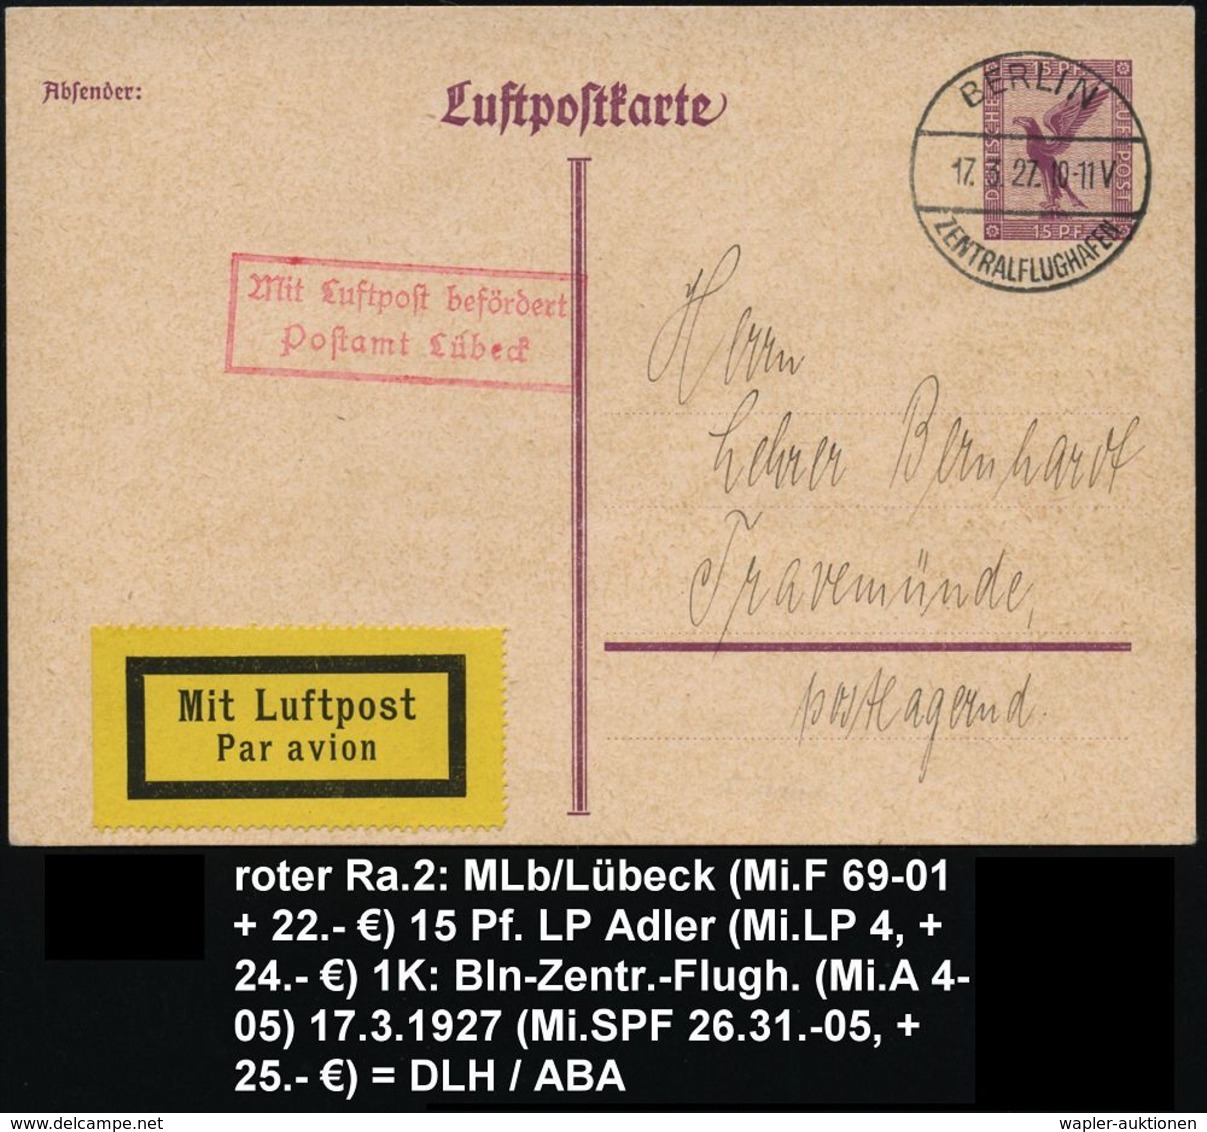 BERLIN/ ZENTRALFLUGHAFEN 1927 (17.3.) 1K-Brücke Ohne Ub = Hauspostamt Flughafen Temeplhof (Mi.A4-05) + Roter Ra.2: MLb/P - Sonstige (Luft)